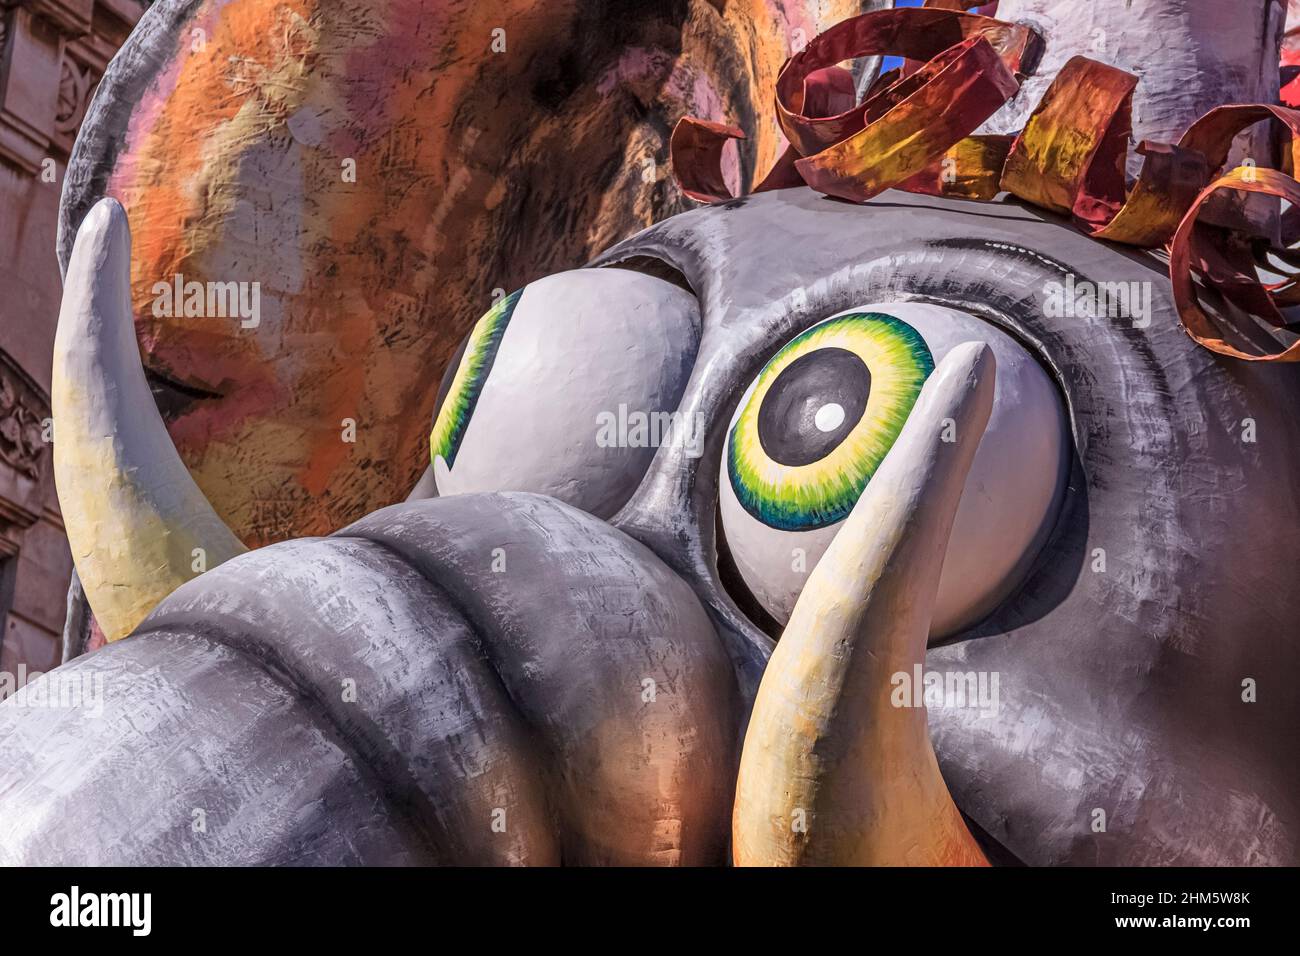 Putignano, Apulia, Italy - February 15, 2015: Carnival floats, giant paper mache: the elephant. Stock Photo